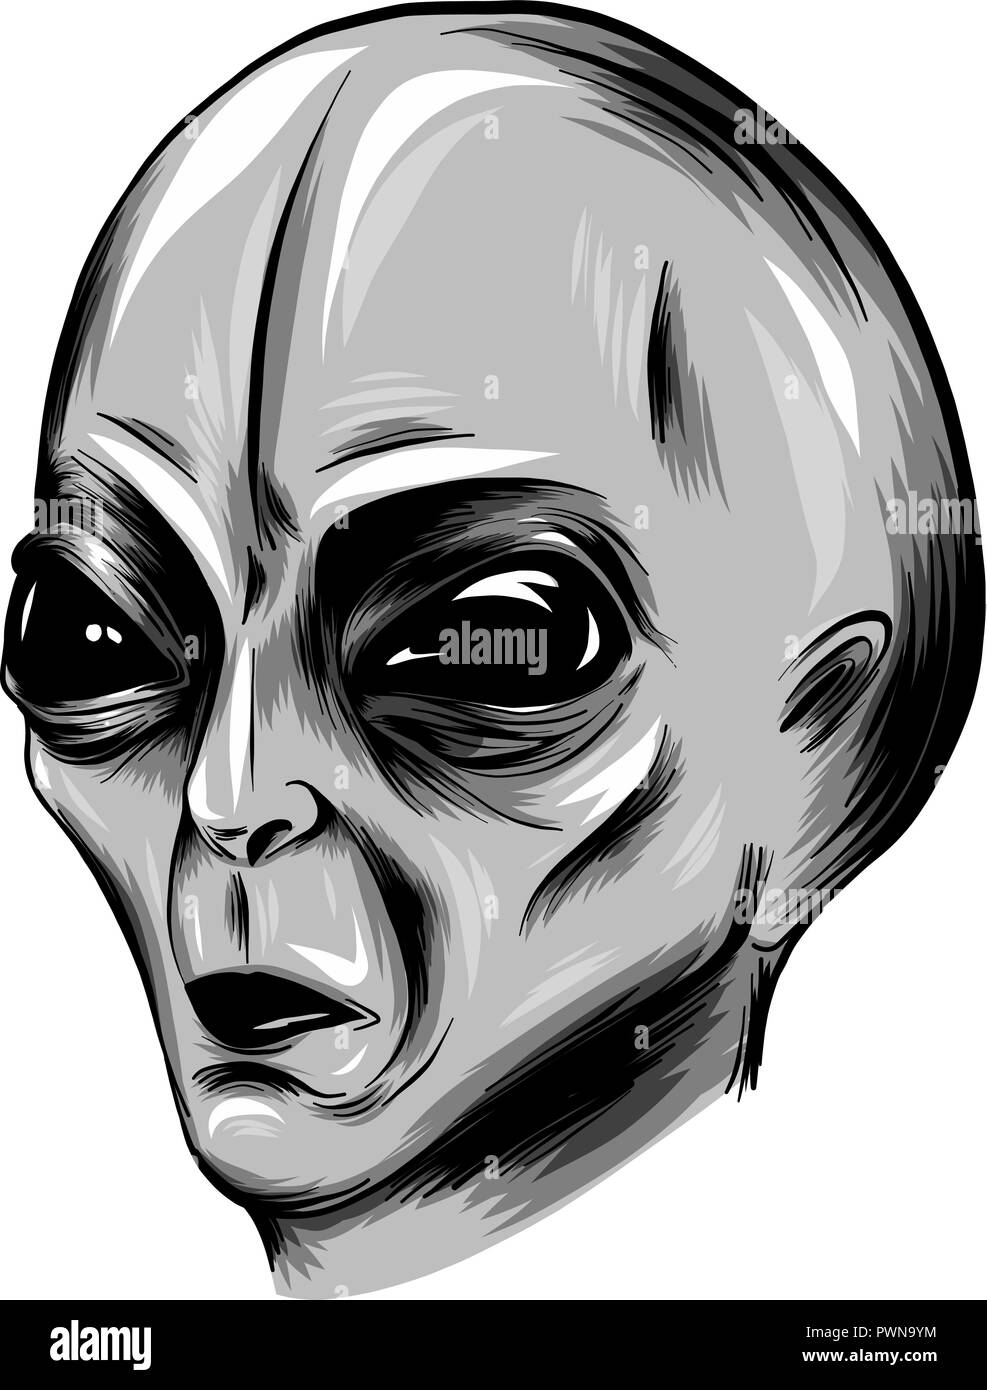 illustration Alien face vector in white background Stock Vector